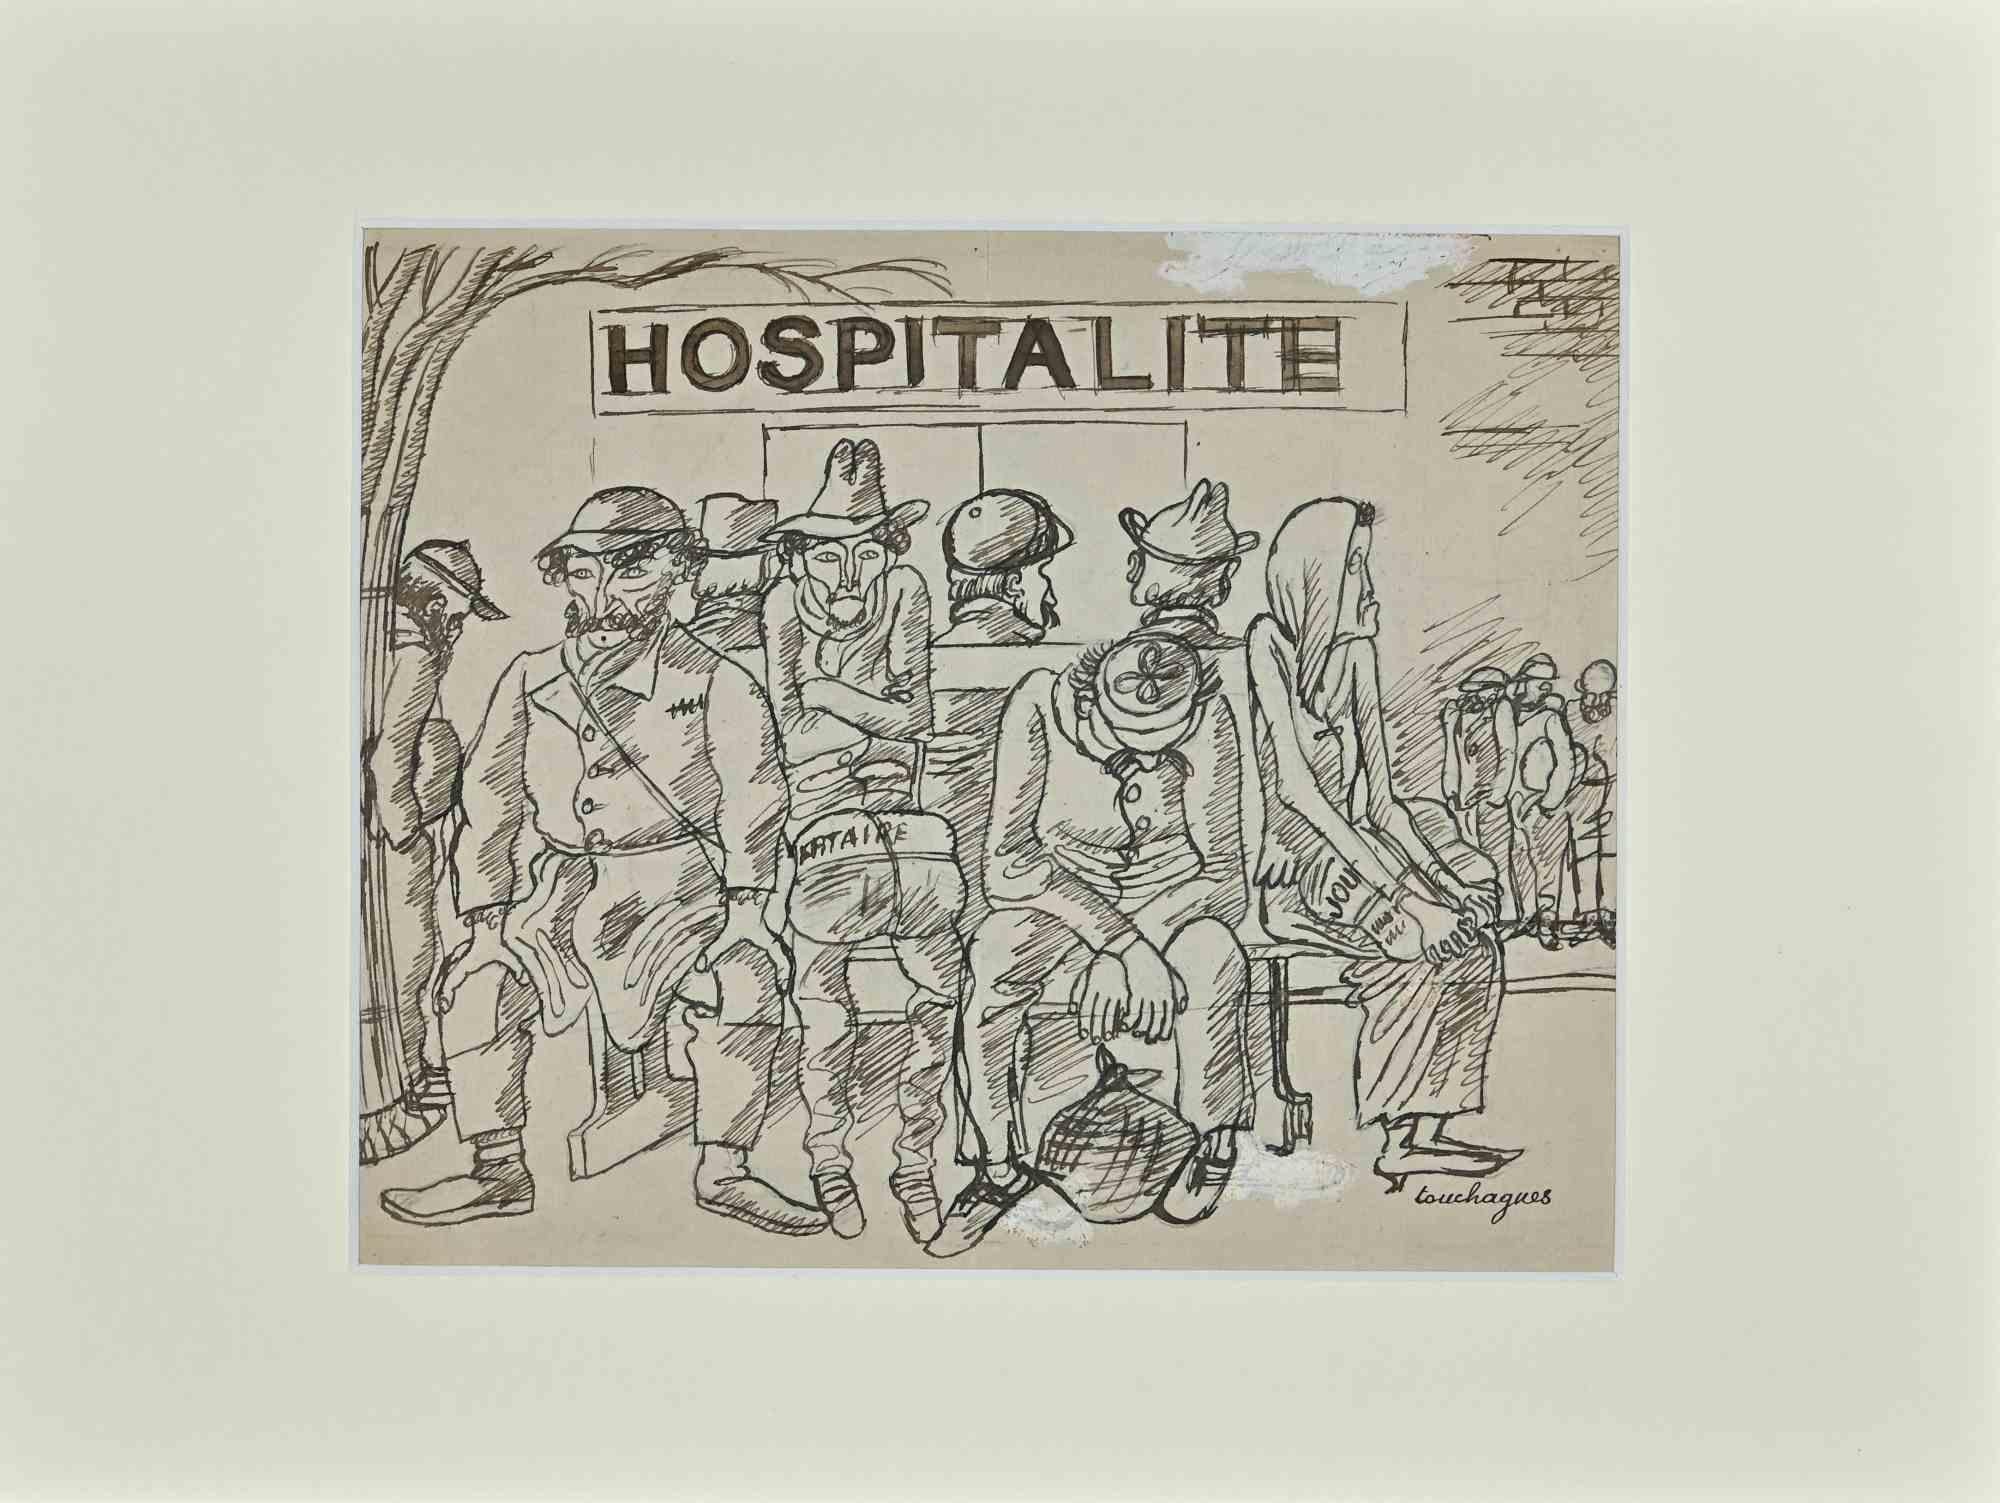 Hospitalité ist eine Original-Porzellan-Tuschezeichnung von Louis Touchagues aus der Mitte des 20. Jahrhunderts.

Auf der Unterseite vom Künstler handsigniert.

Gute Bedingungen.

Die zarten und dynamischen Striche wirken harmonisch.